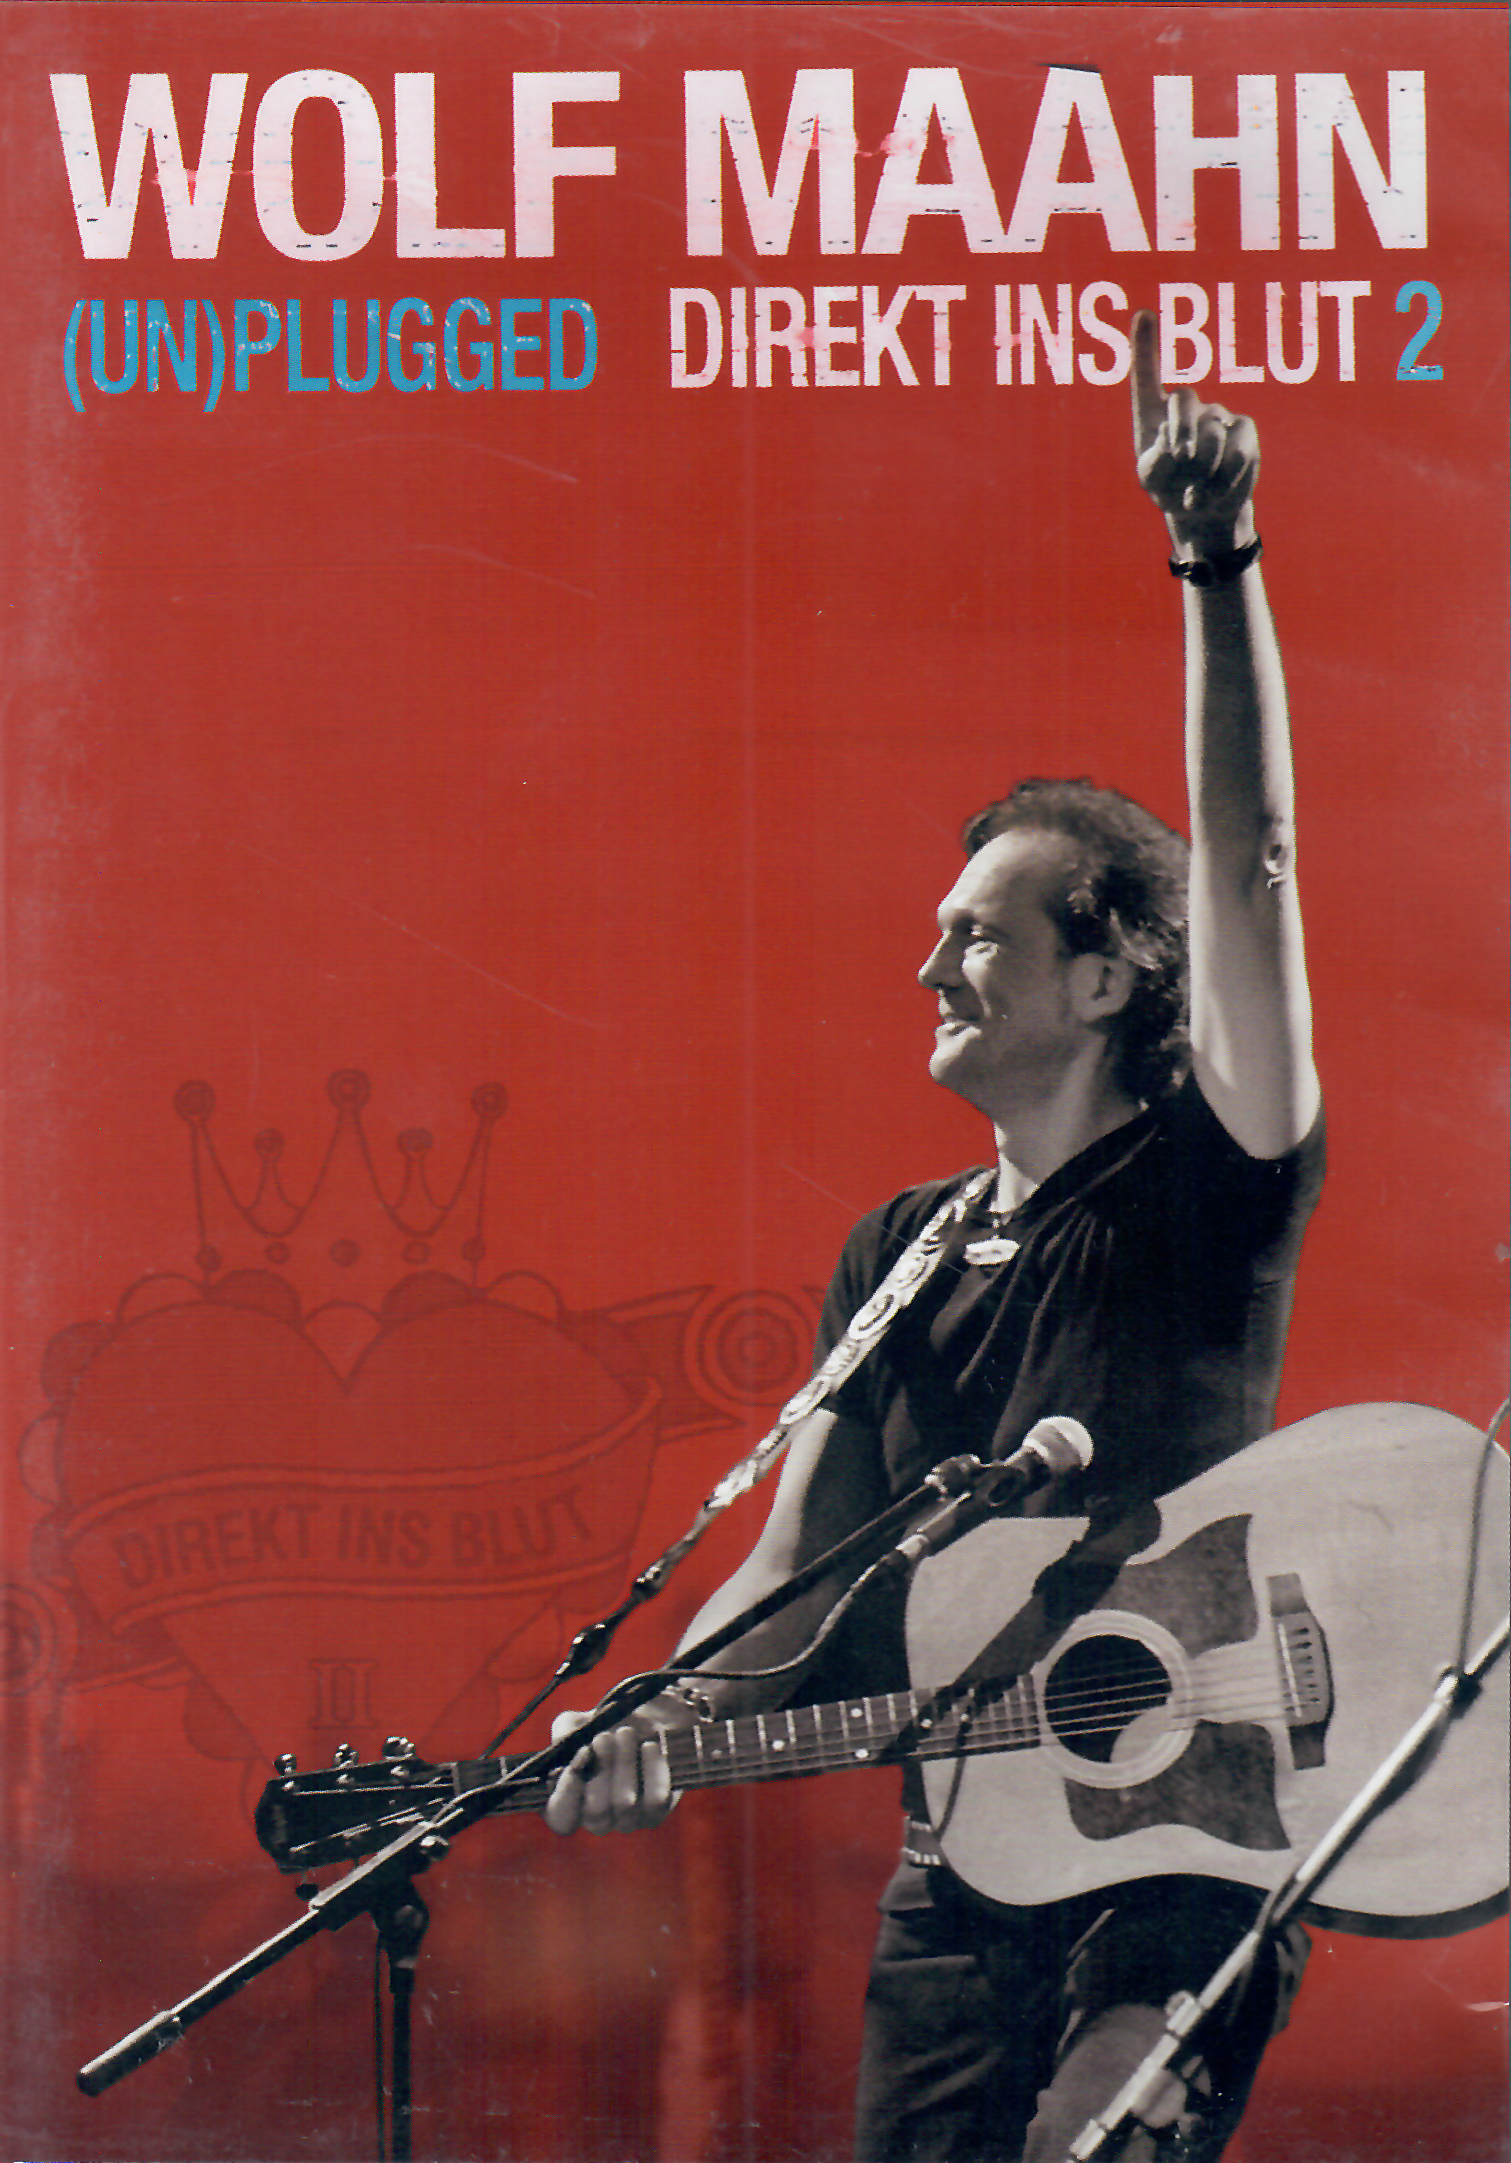 DVD Wolf Maahn - Direkt ins Blut 2 unplugged (gebraucht)